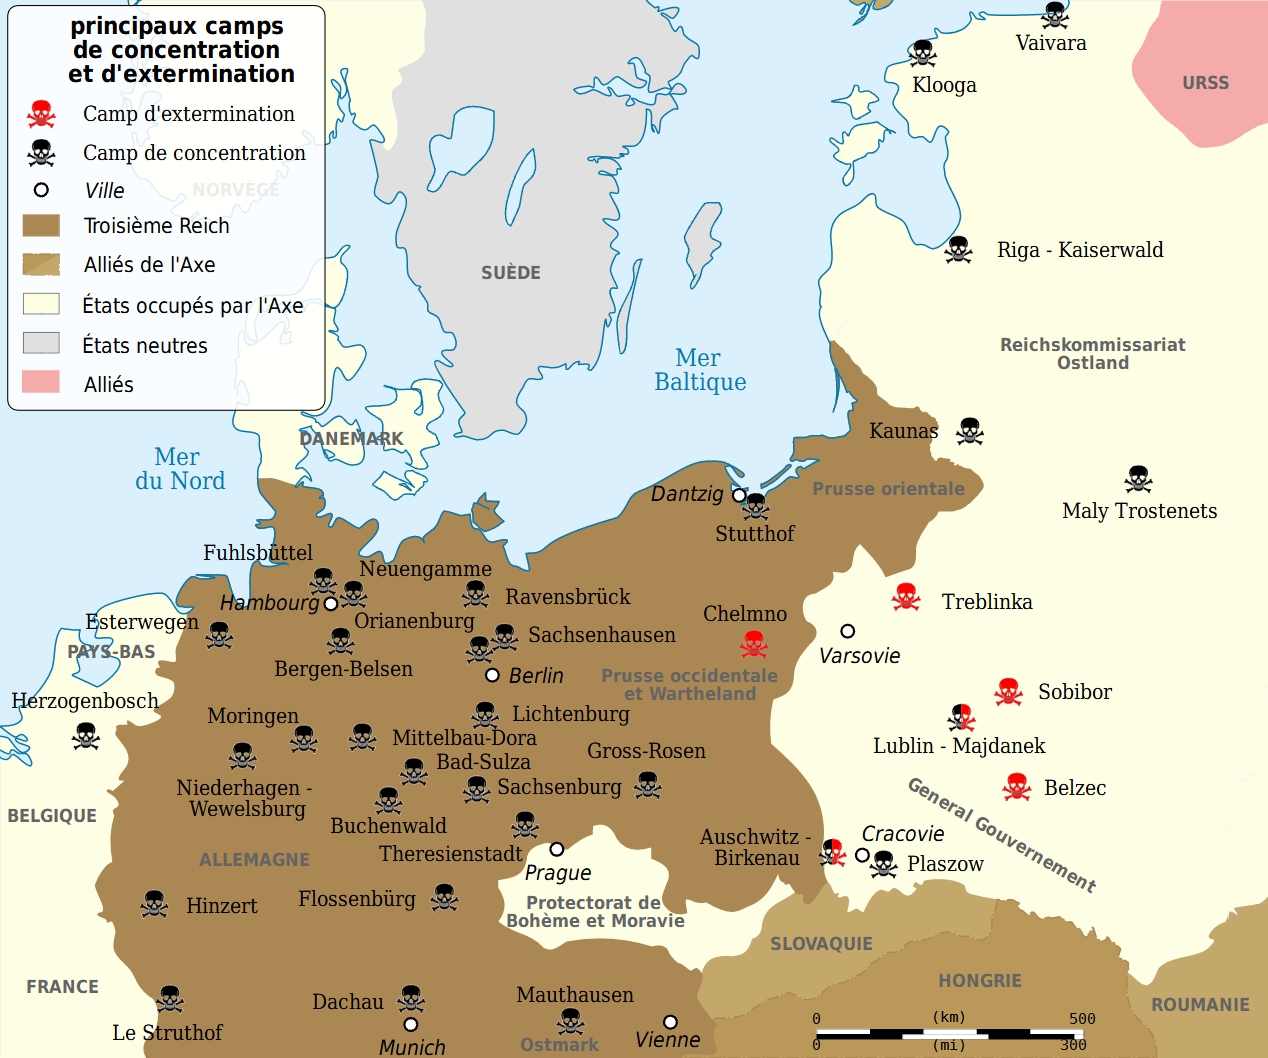 Carte des camps de concentration et d'extermination nazis (Source : https://fr.wikipedia.org/wiki/Camps_de_concentration_nazis#/media/Fichier:WW2_Holocaust_Europe_N-E_map-fr.svg).